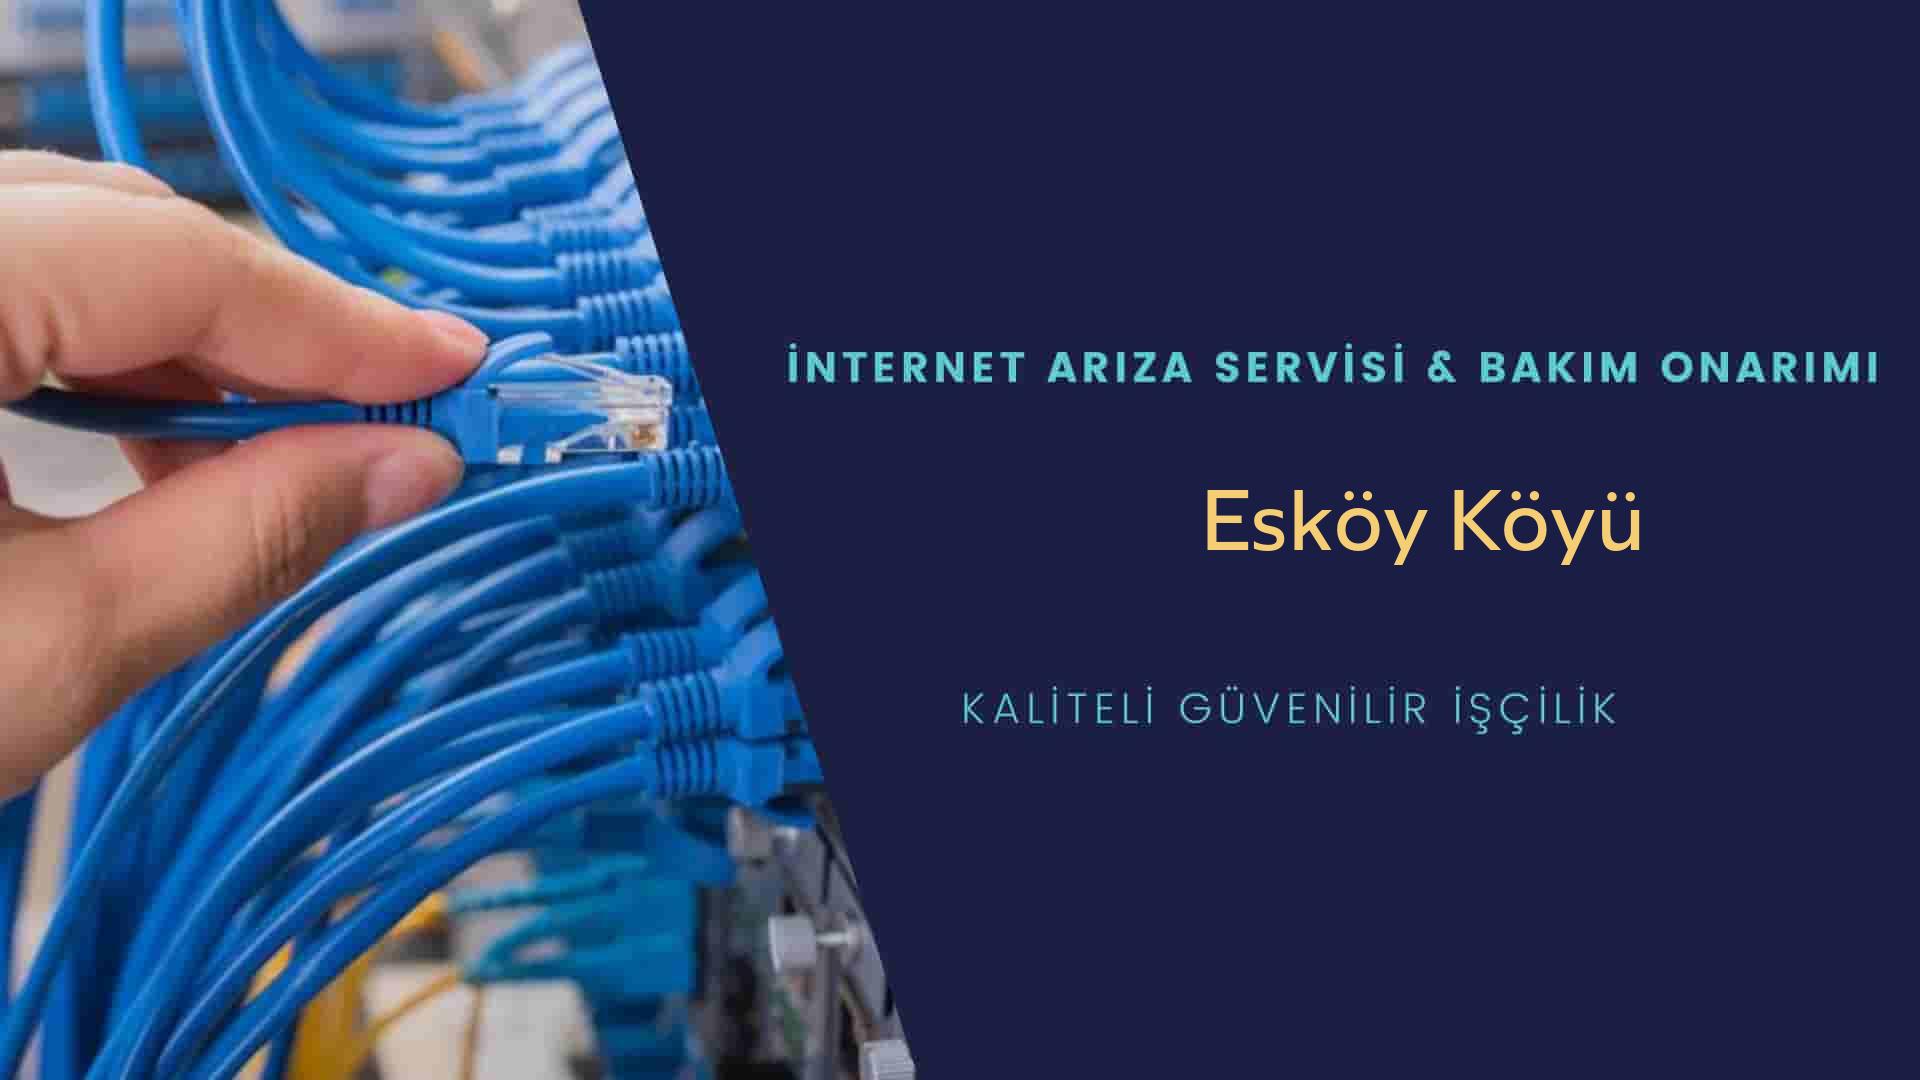 Esköy Köyü internet kablosu çekimi yapan yerler veya elektrikçiler mi? arıyorsunuz doğru yerdesiniz o zaman sizlere 7/24 yardımcı olacak profesyonel ustalarımız bir telefon kadar yakındır size.